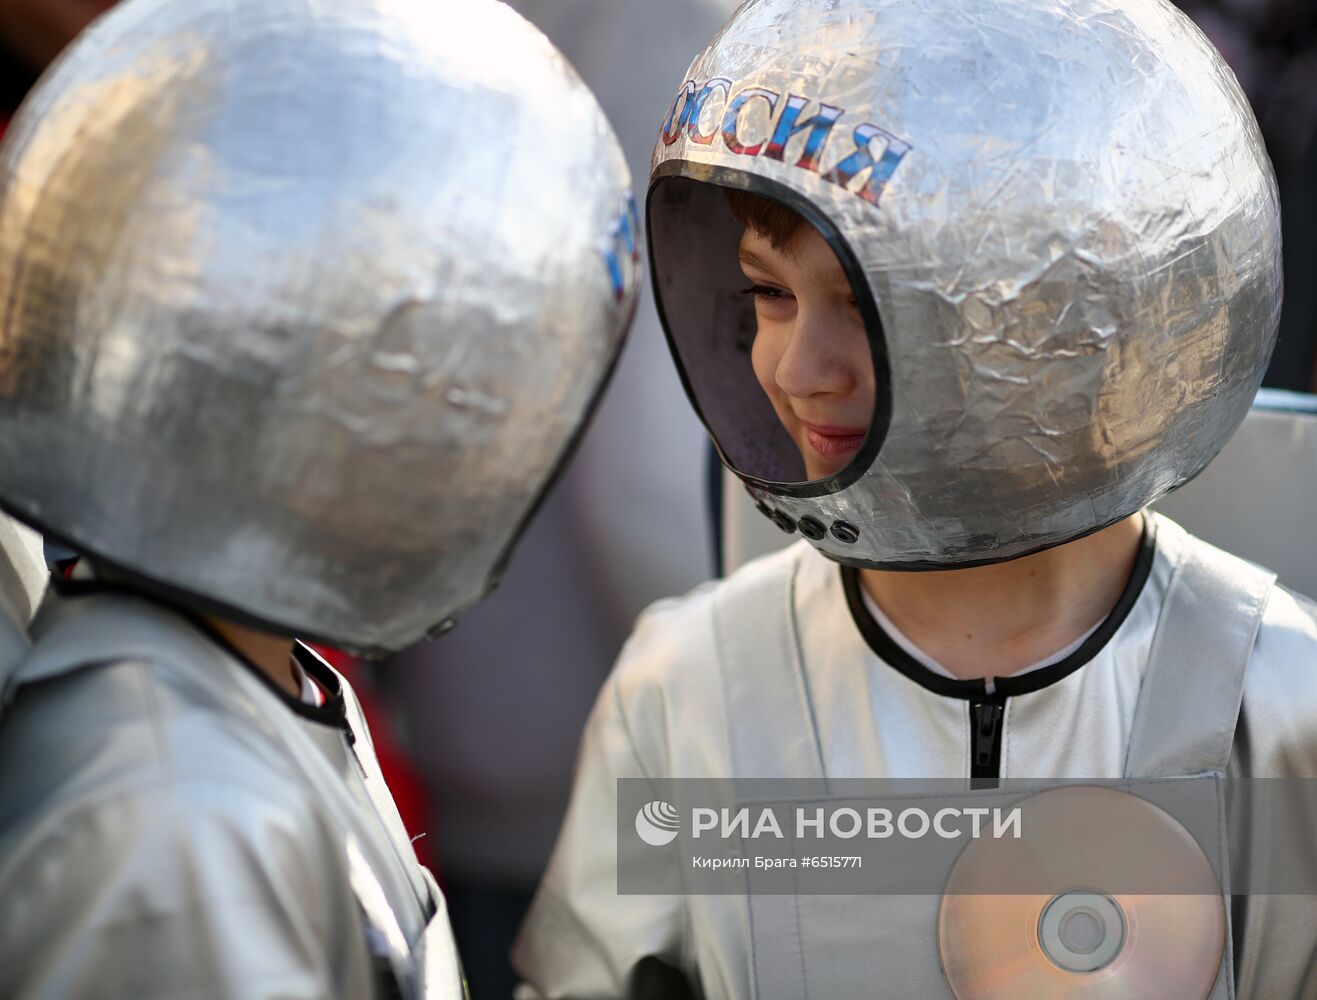 Празднование Дня космонавтики в Волгограде